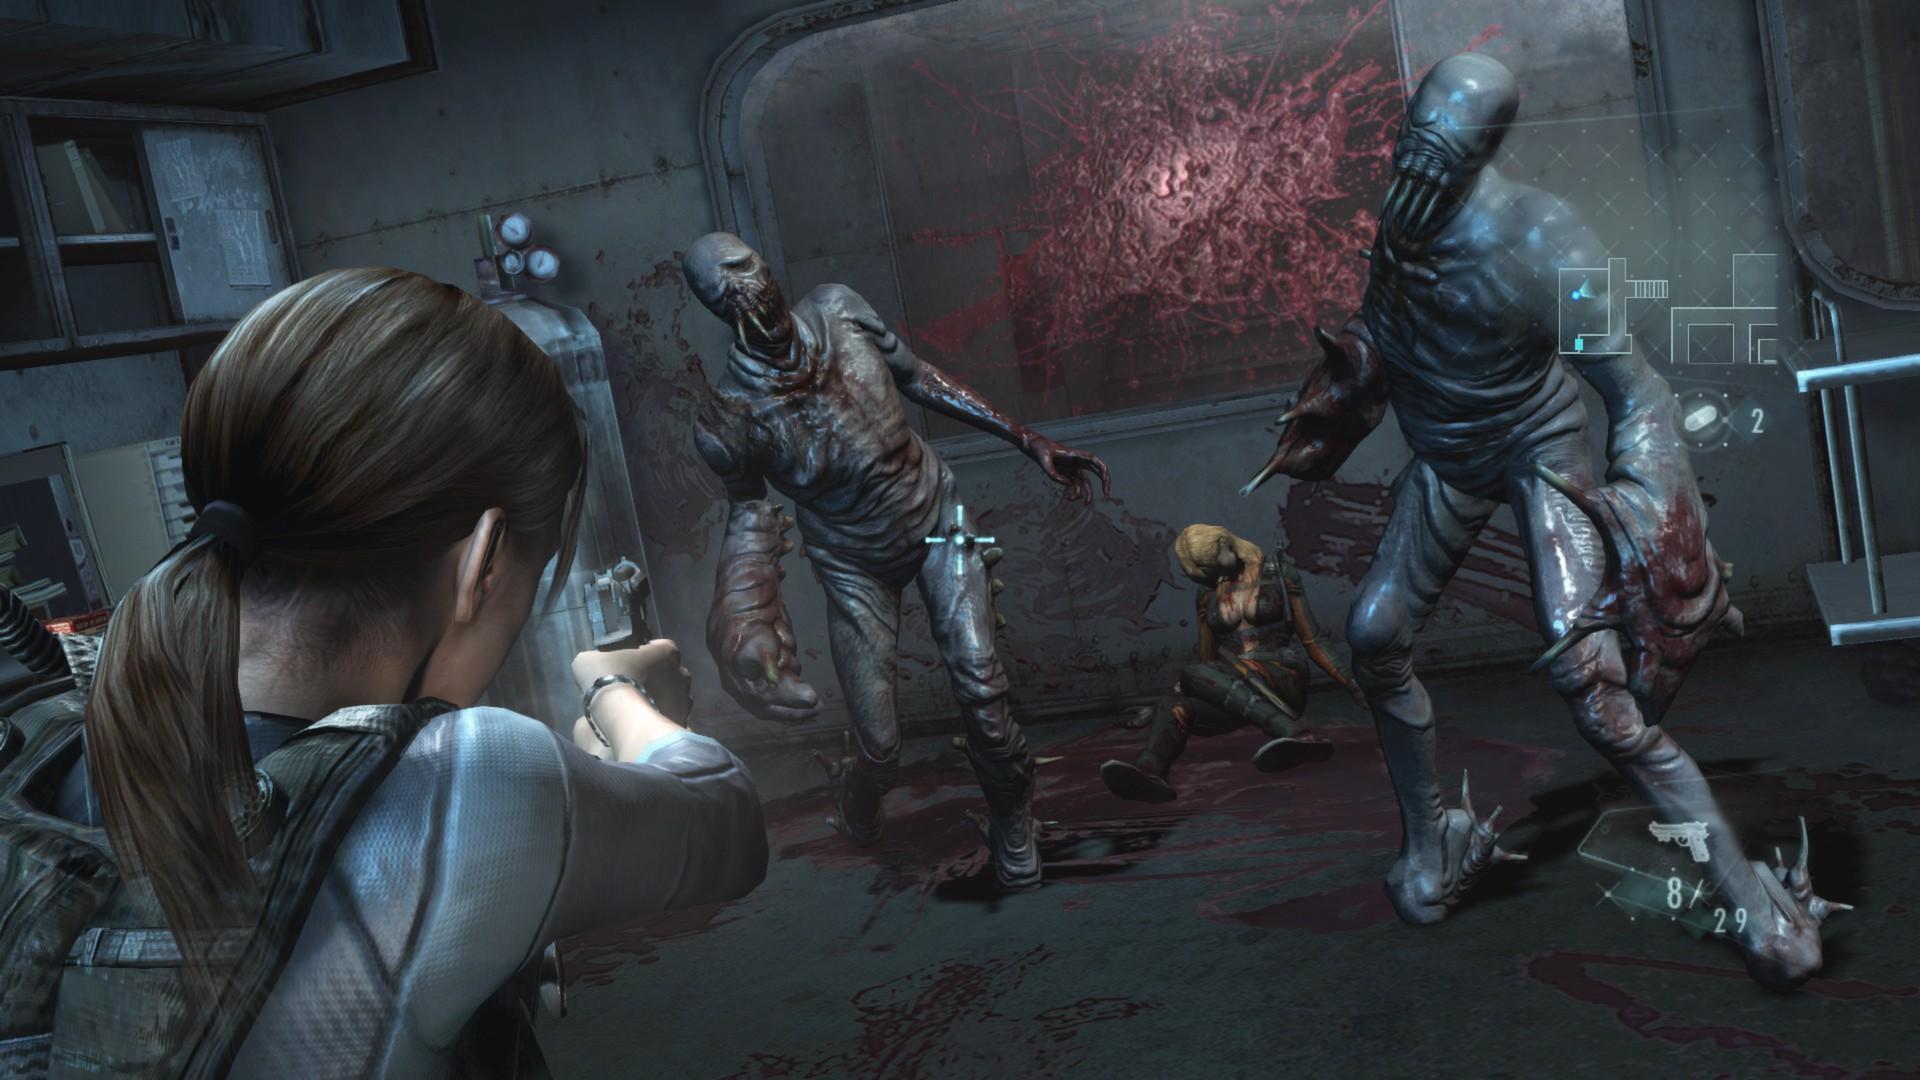 Screenshot №8 from game Resident Evil Revelations